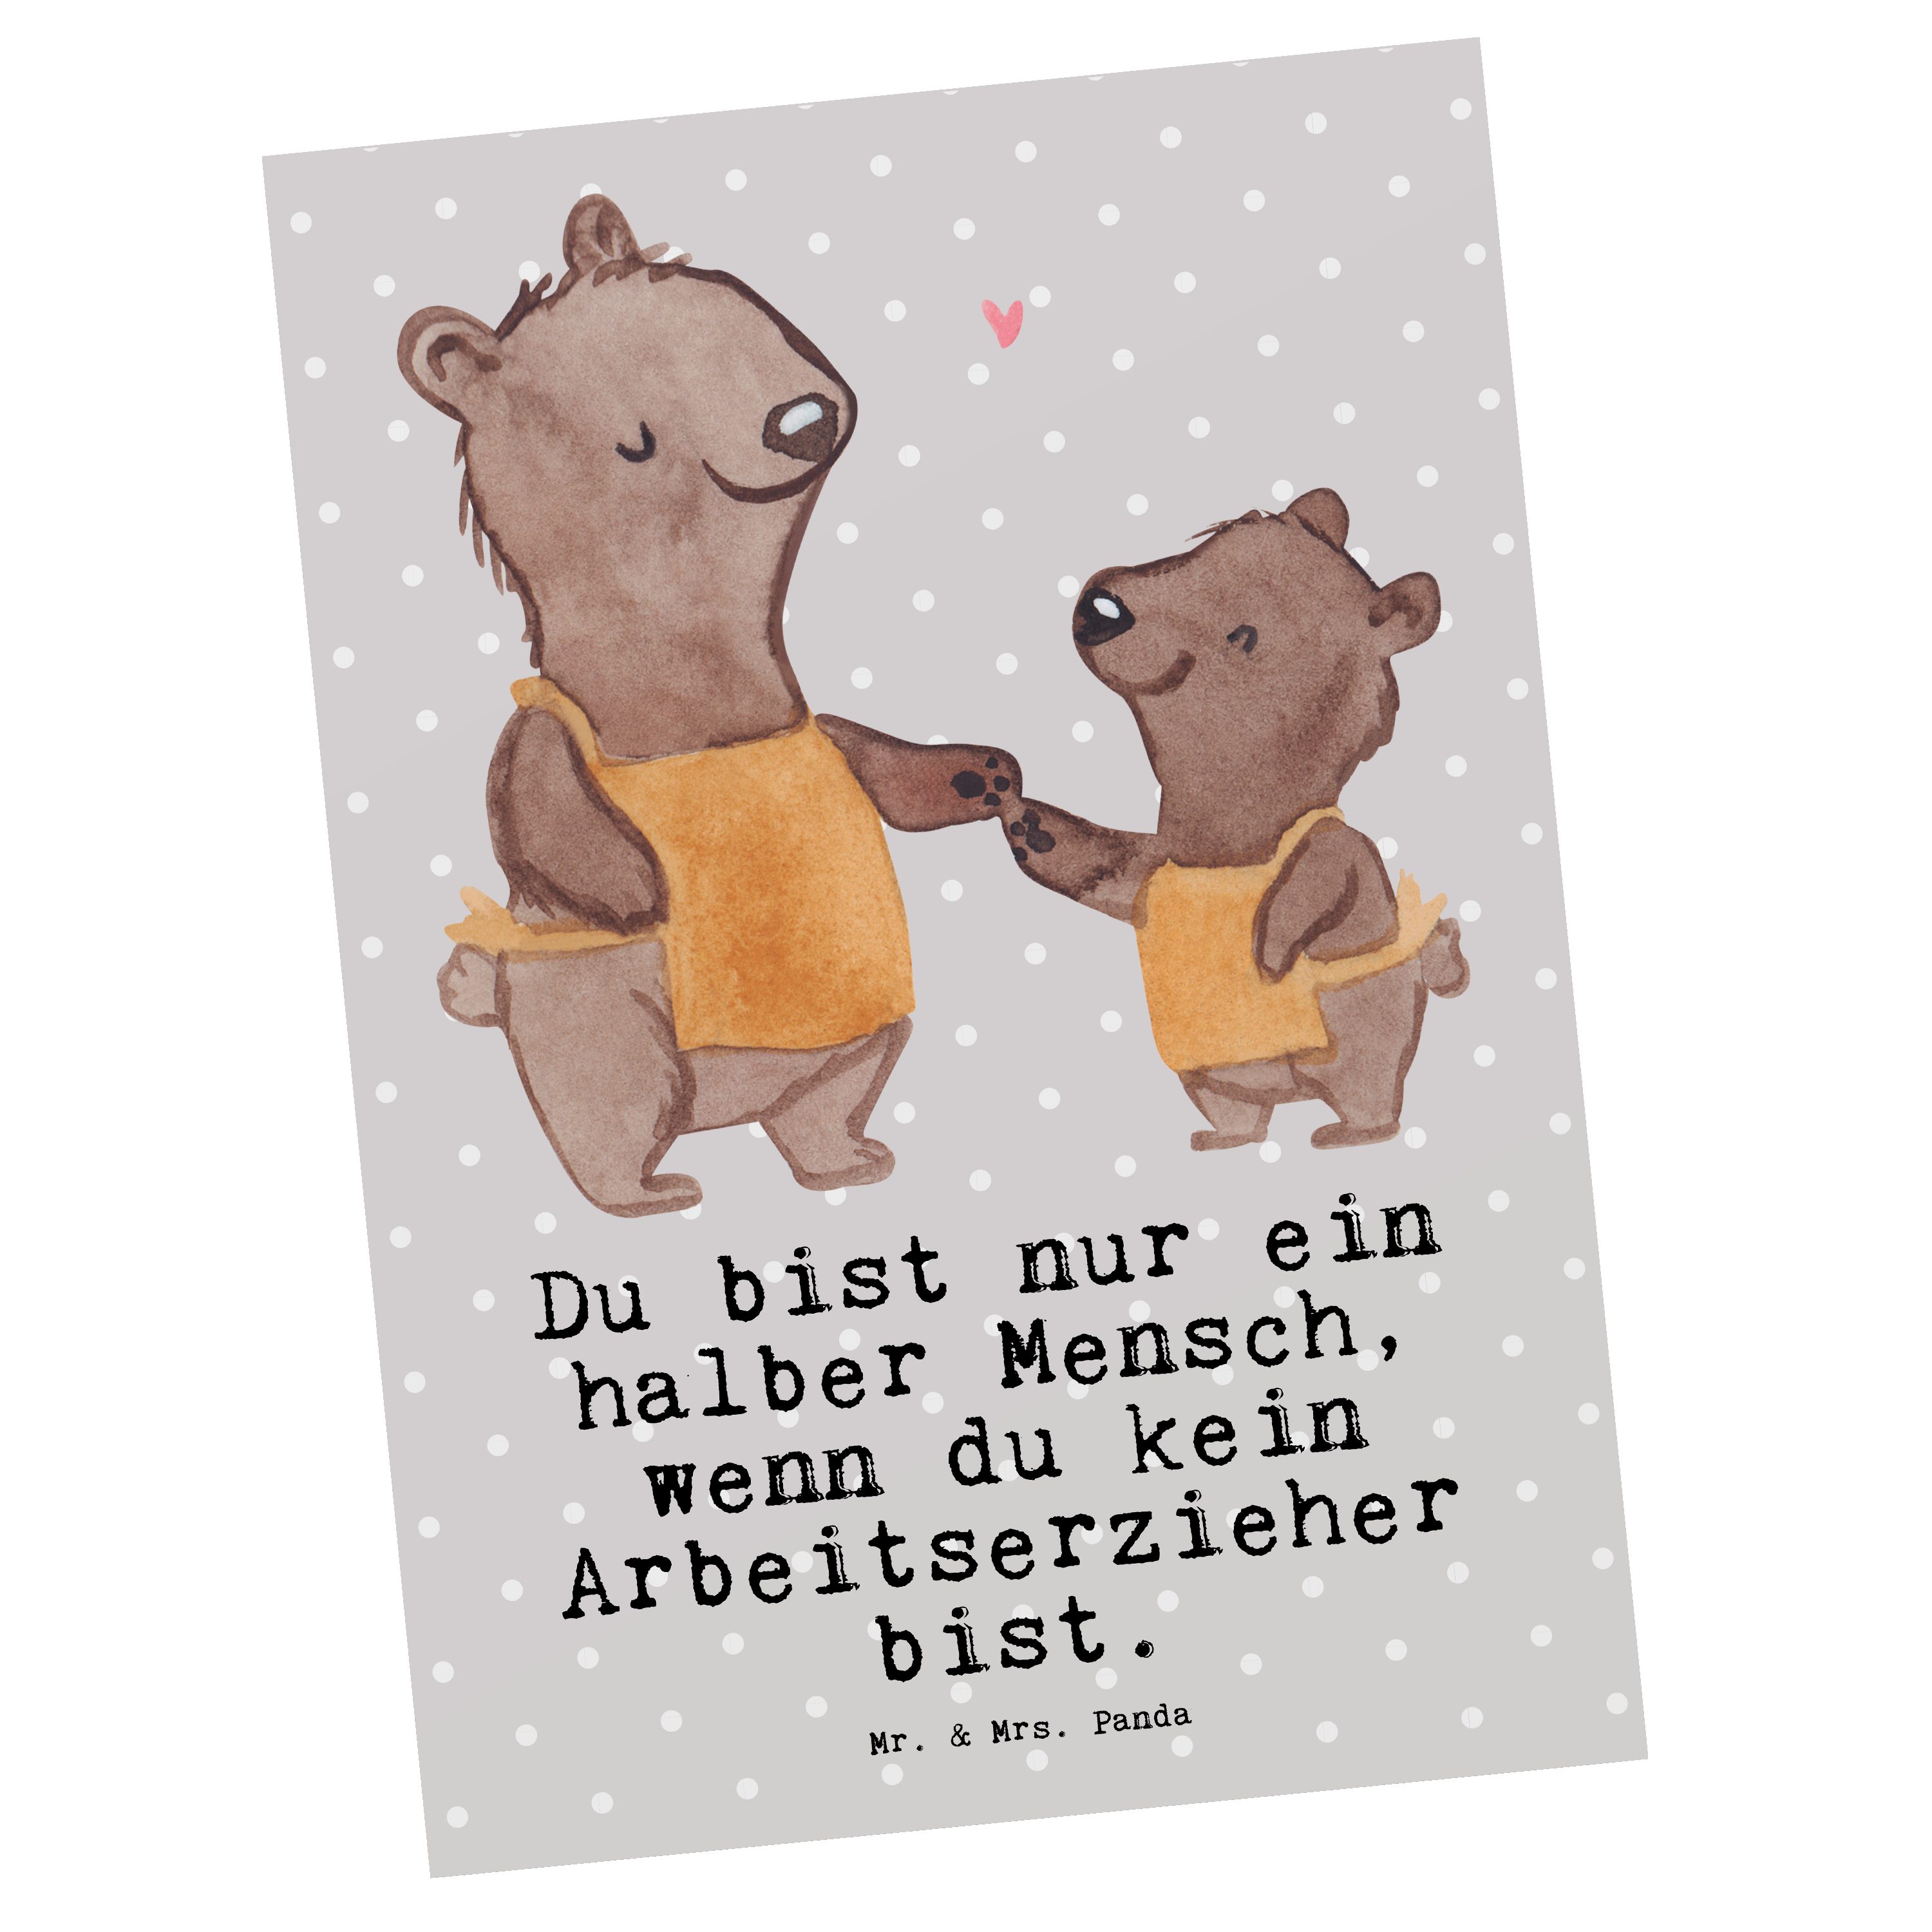 Mr. & Mrs. Panda Postkarte Arbeitserzieher mit Herz - Grau Pastell - Geschenk, Studium, Ausbildu